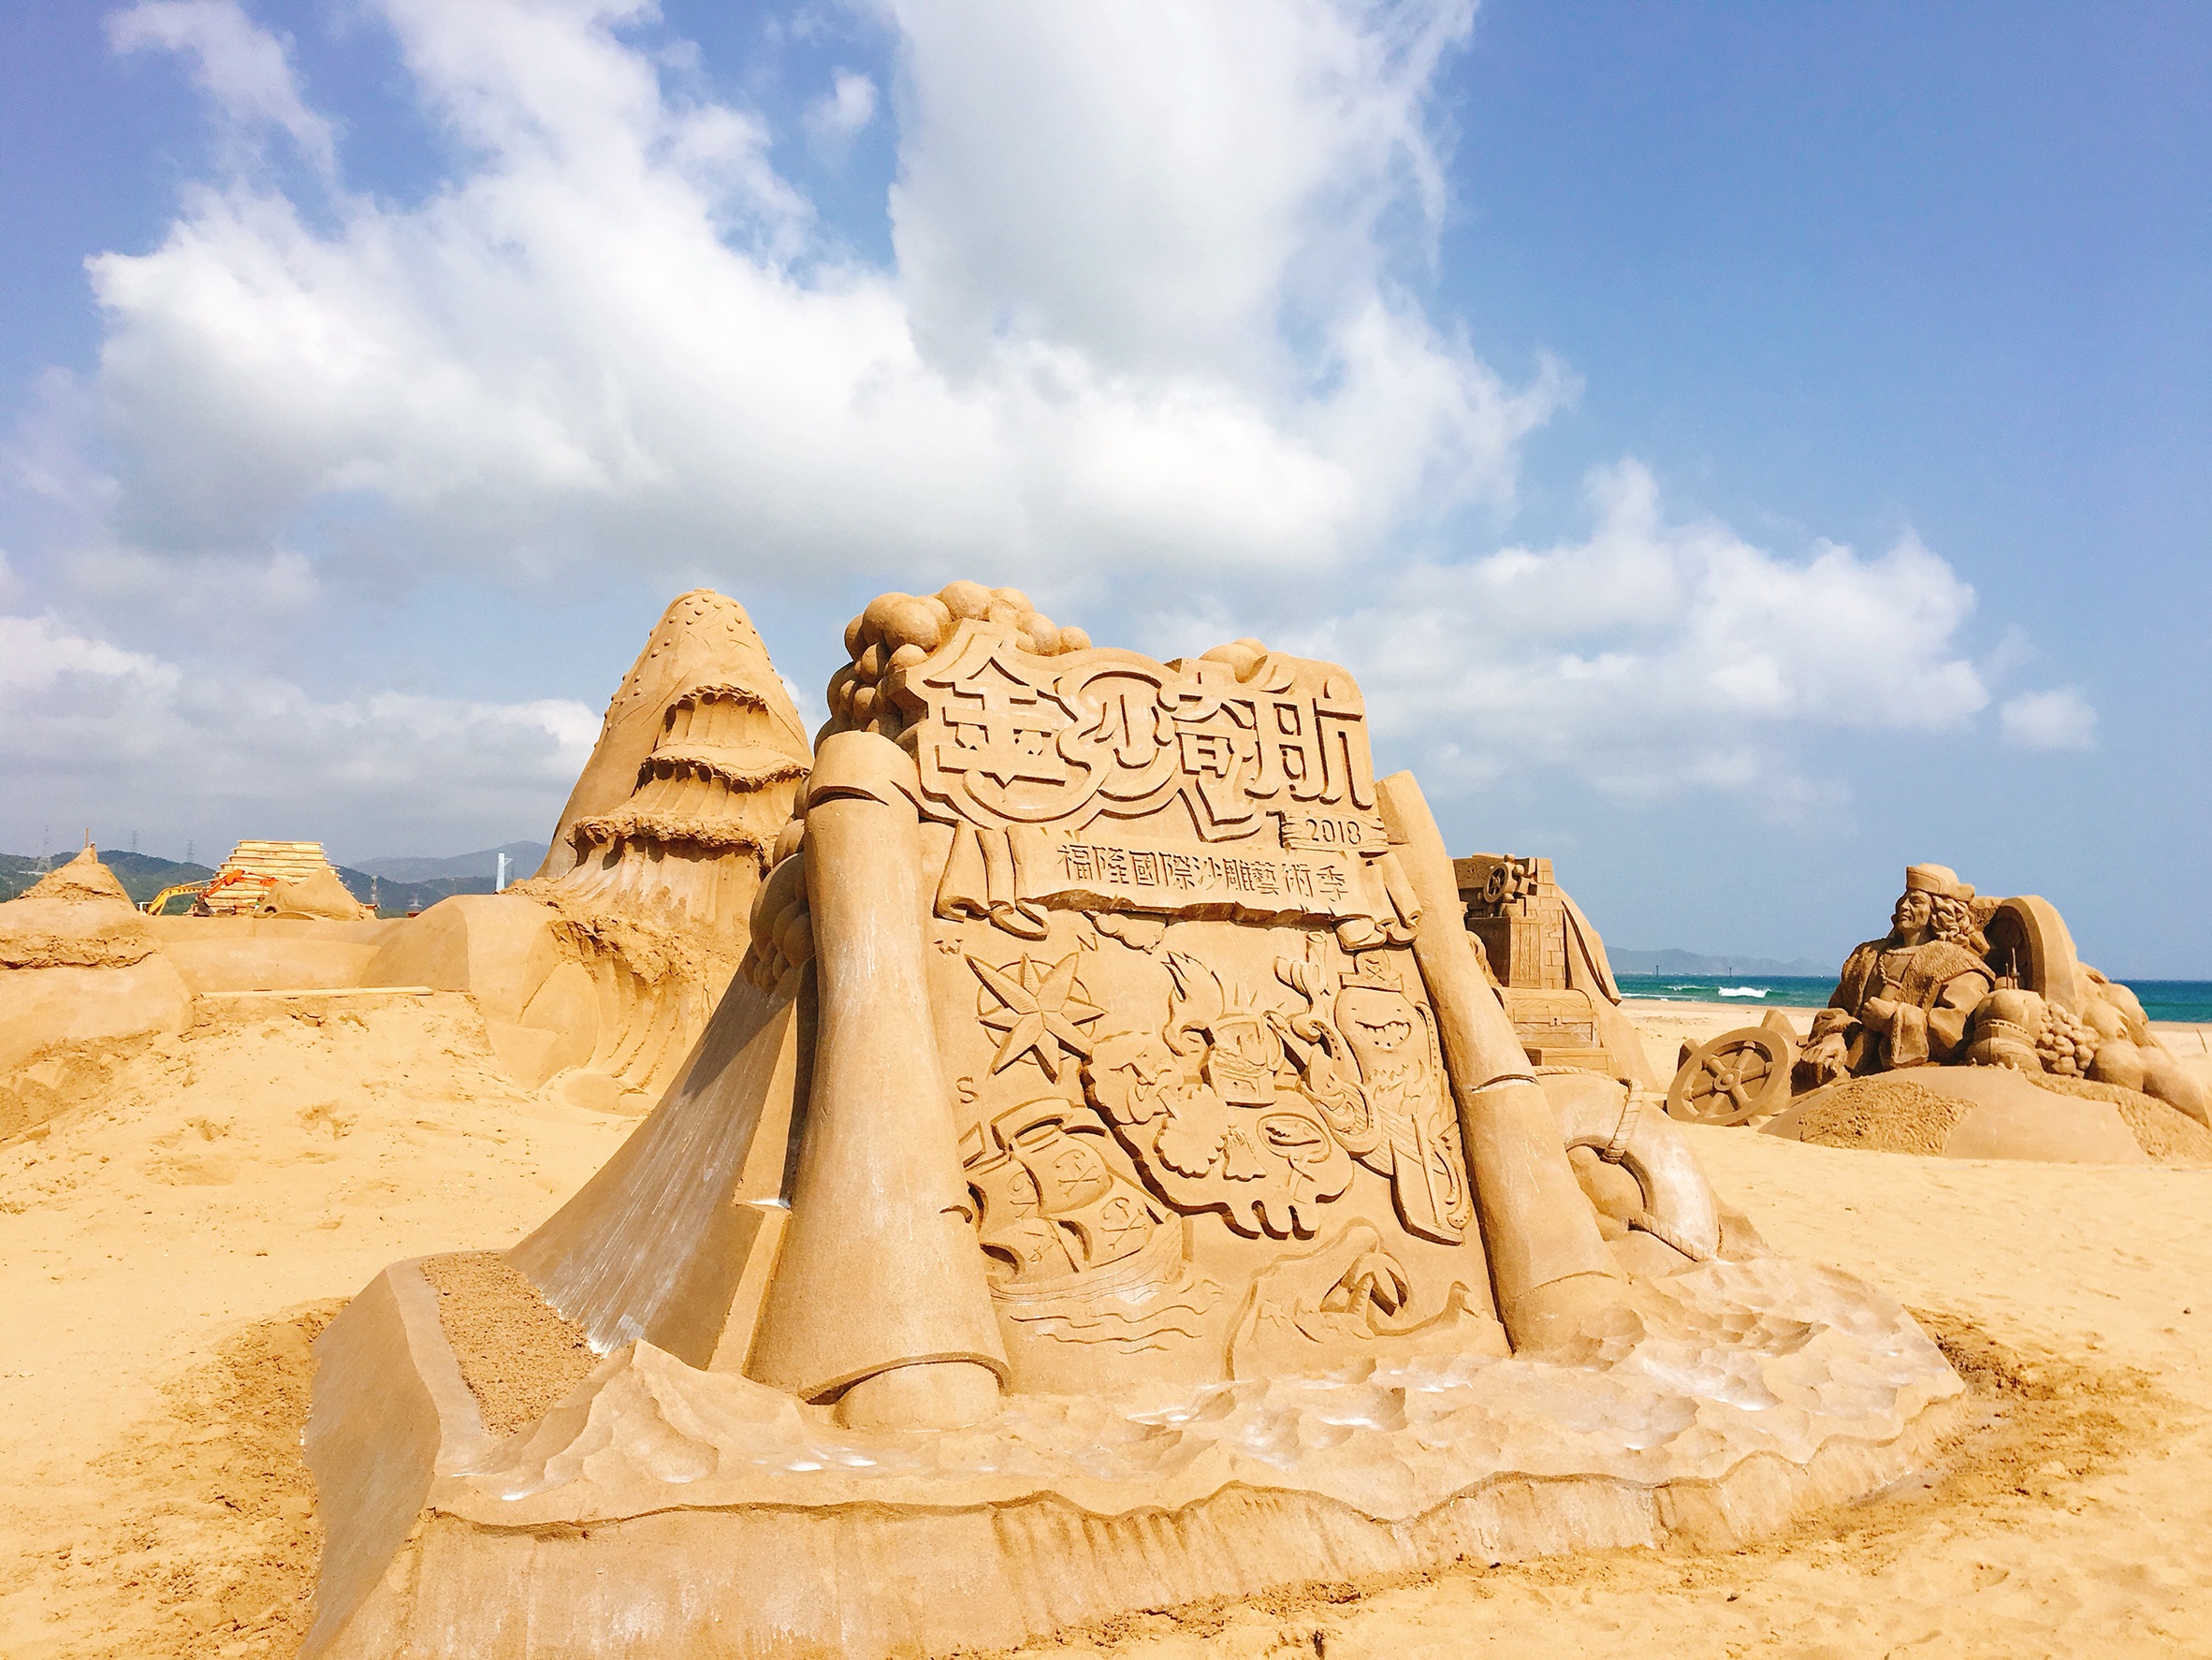 2018 Fulong International Sand Sculpture Art Season Sand Sculpture